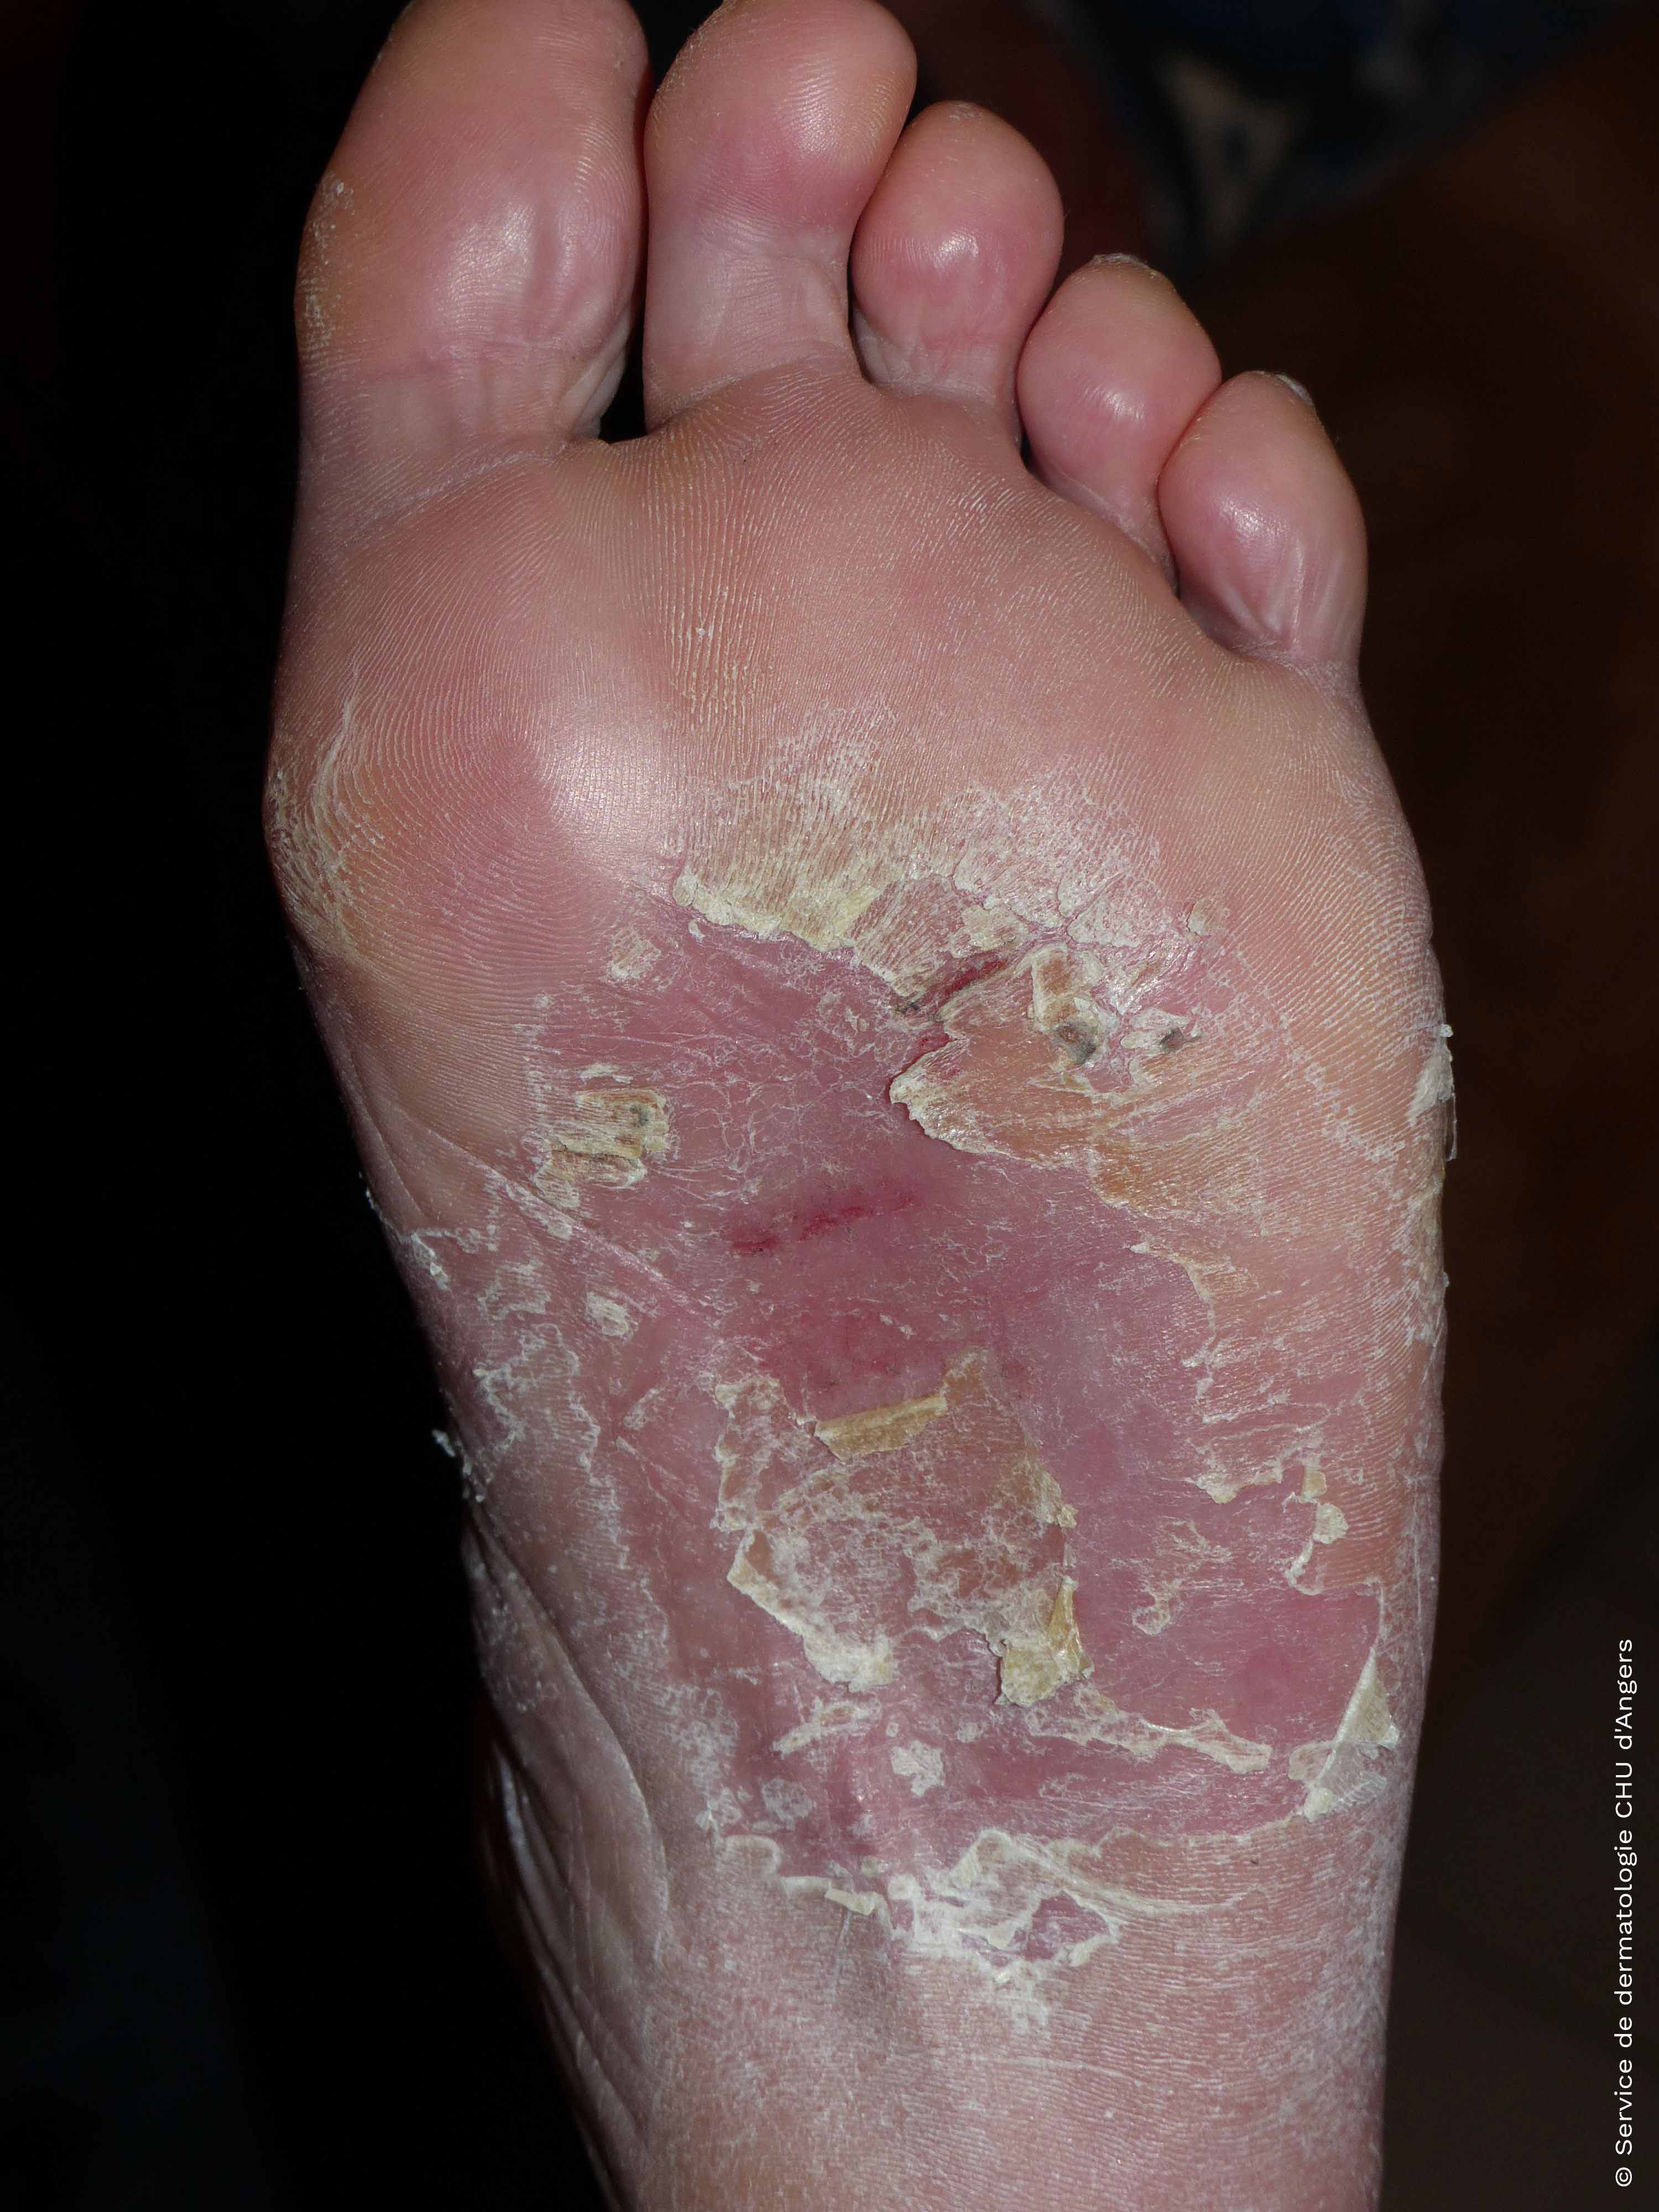 Eczema de contacto en los pies debido a la cola y el cuero de los zapatos